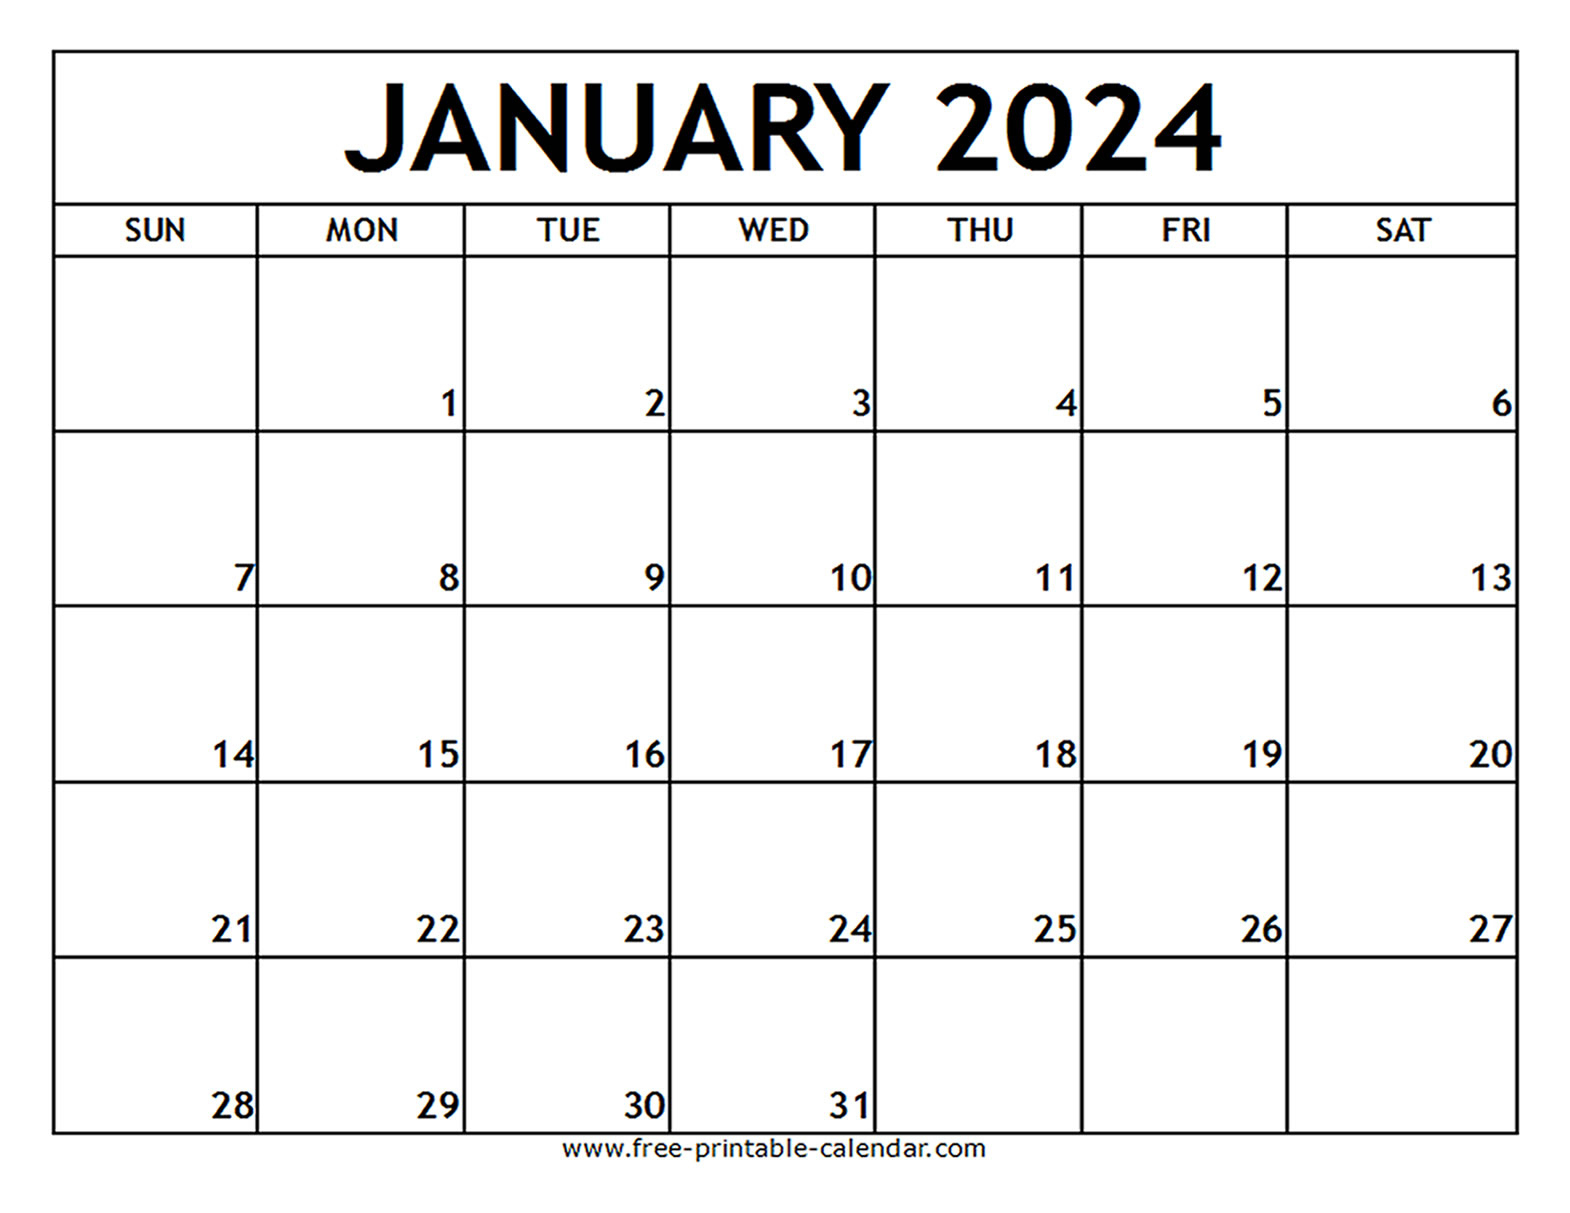 January 2024 Printable Calendar - Free-Printable-Calendar | Free 2024 Printable Calendar